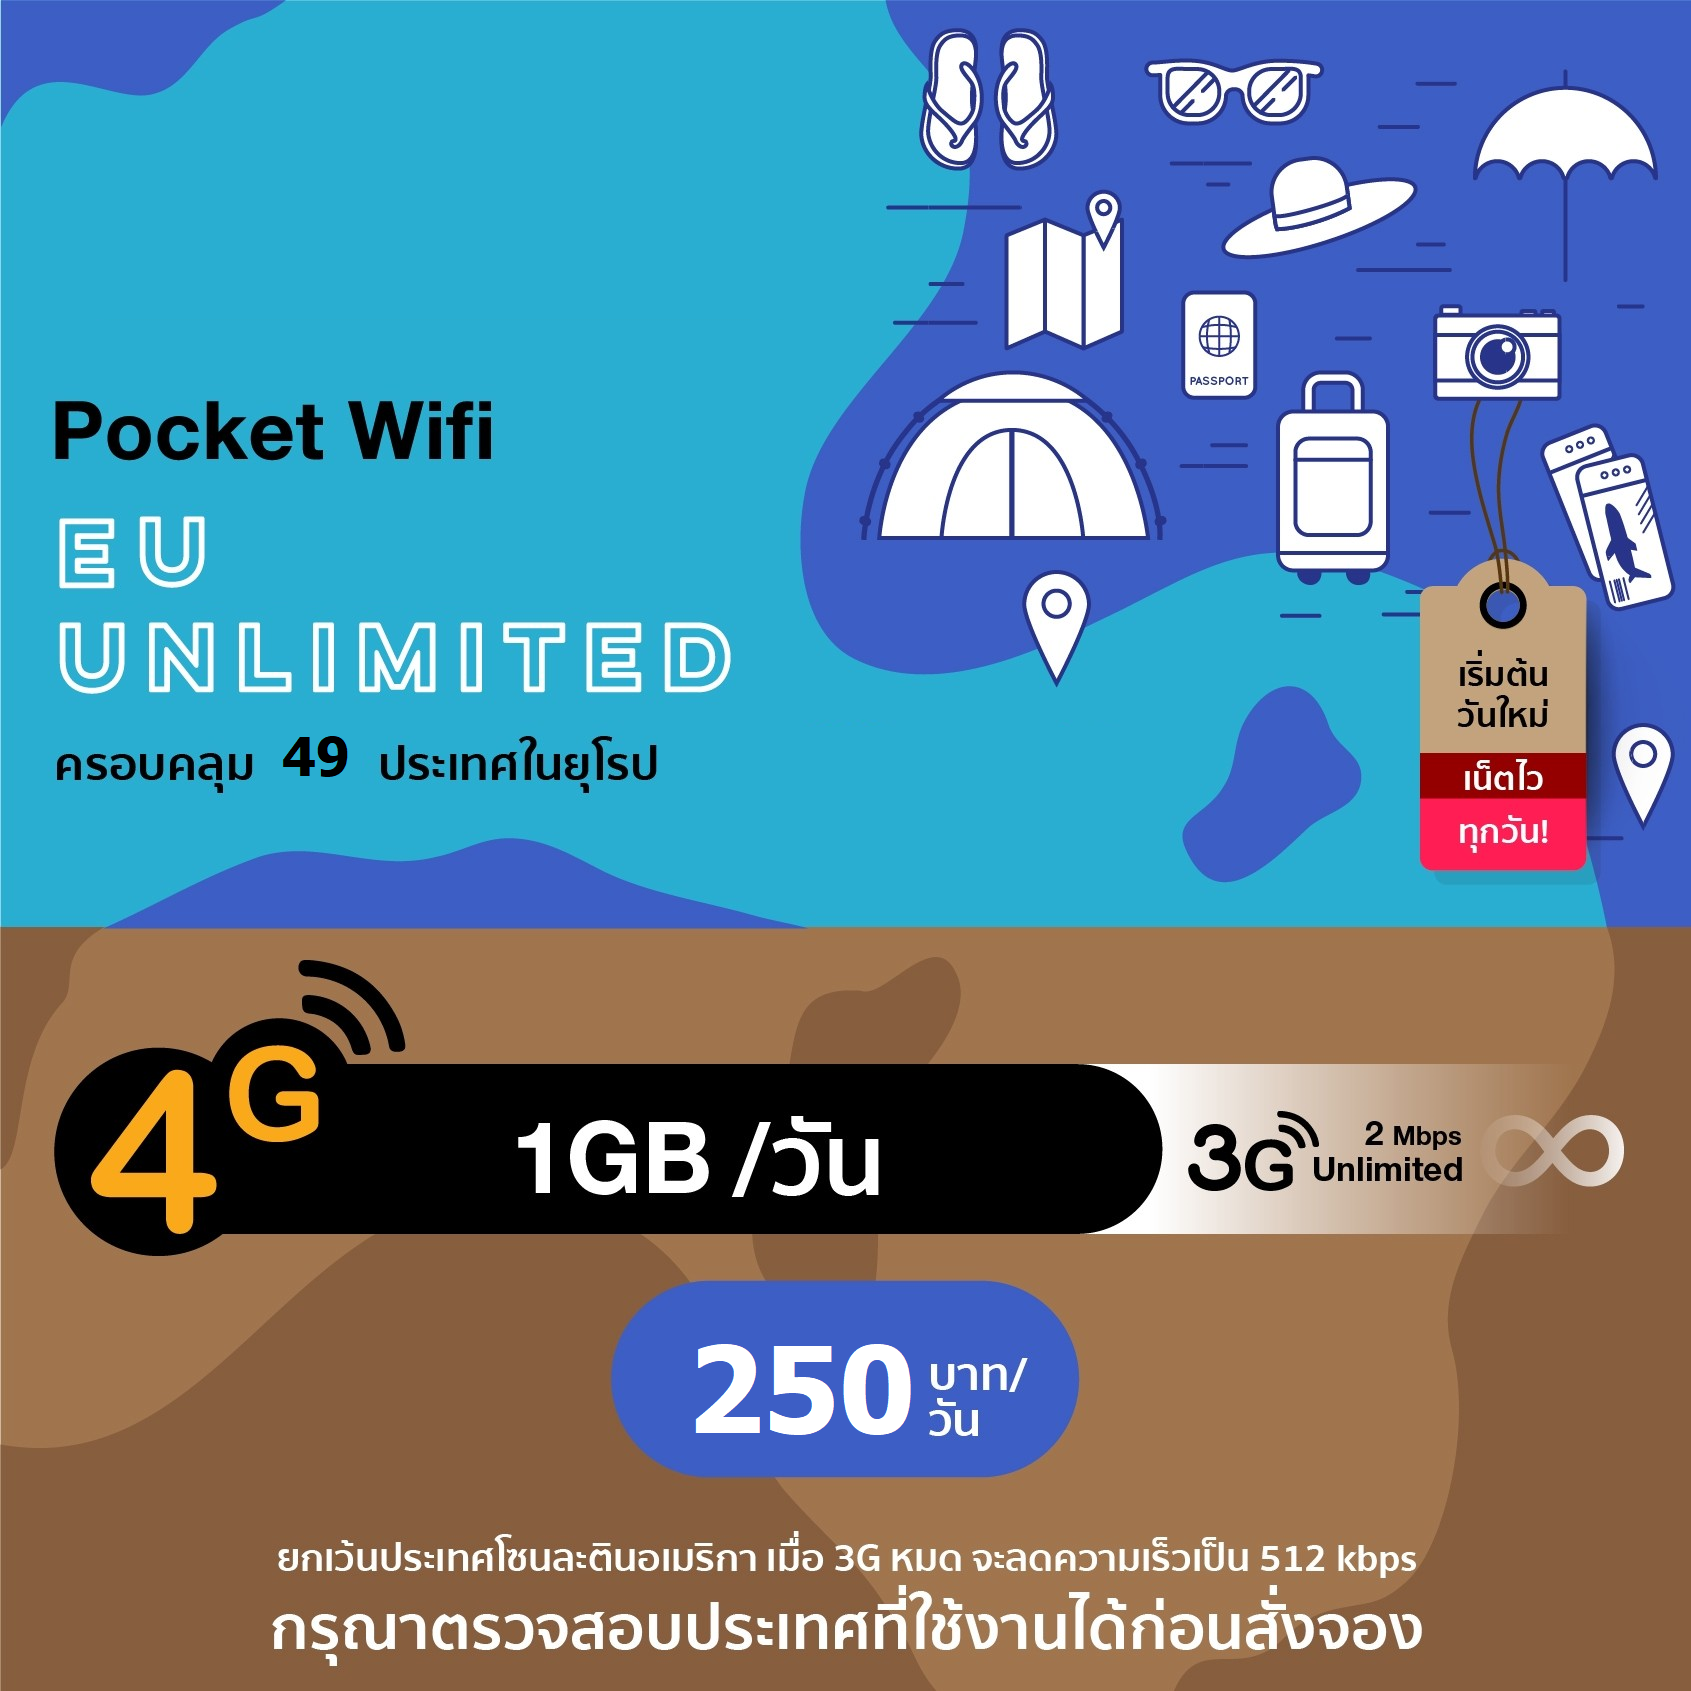 บริการ 4G Europe Pocket WiFi ครอบคลุม 49 ประเทศในยุโรป อินเตอร์เน็ตไม่จำกัด (Highspeed 1 GB/day)